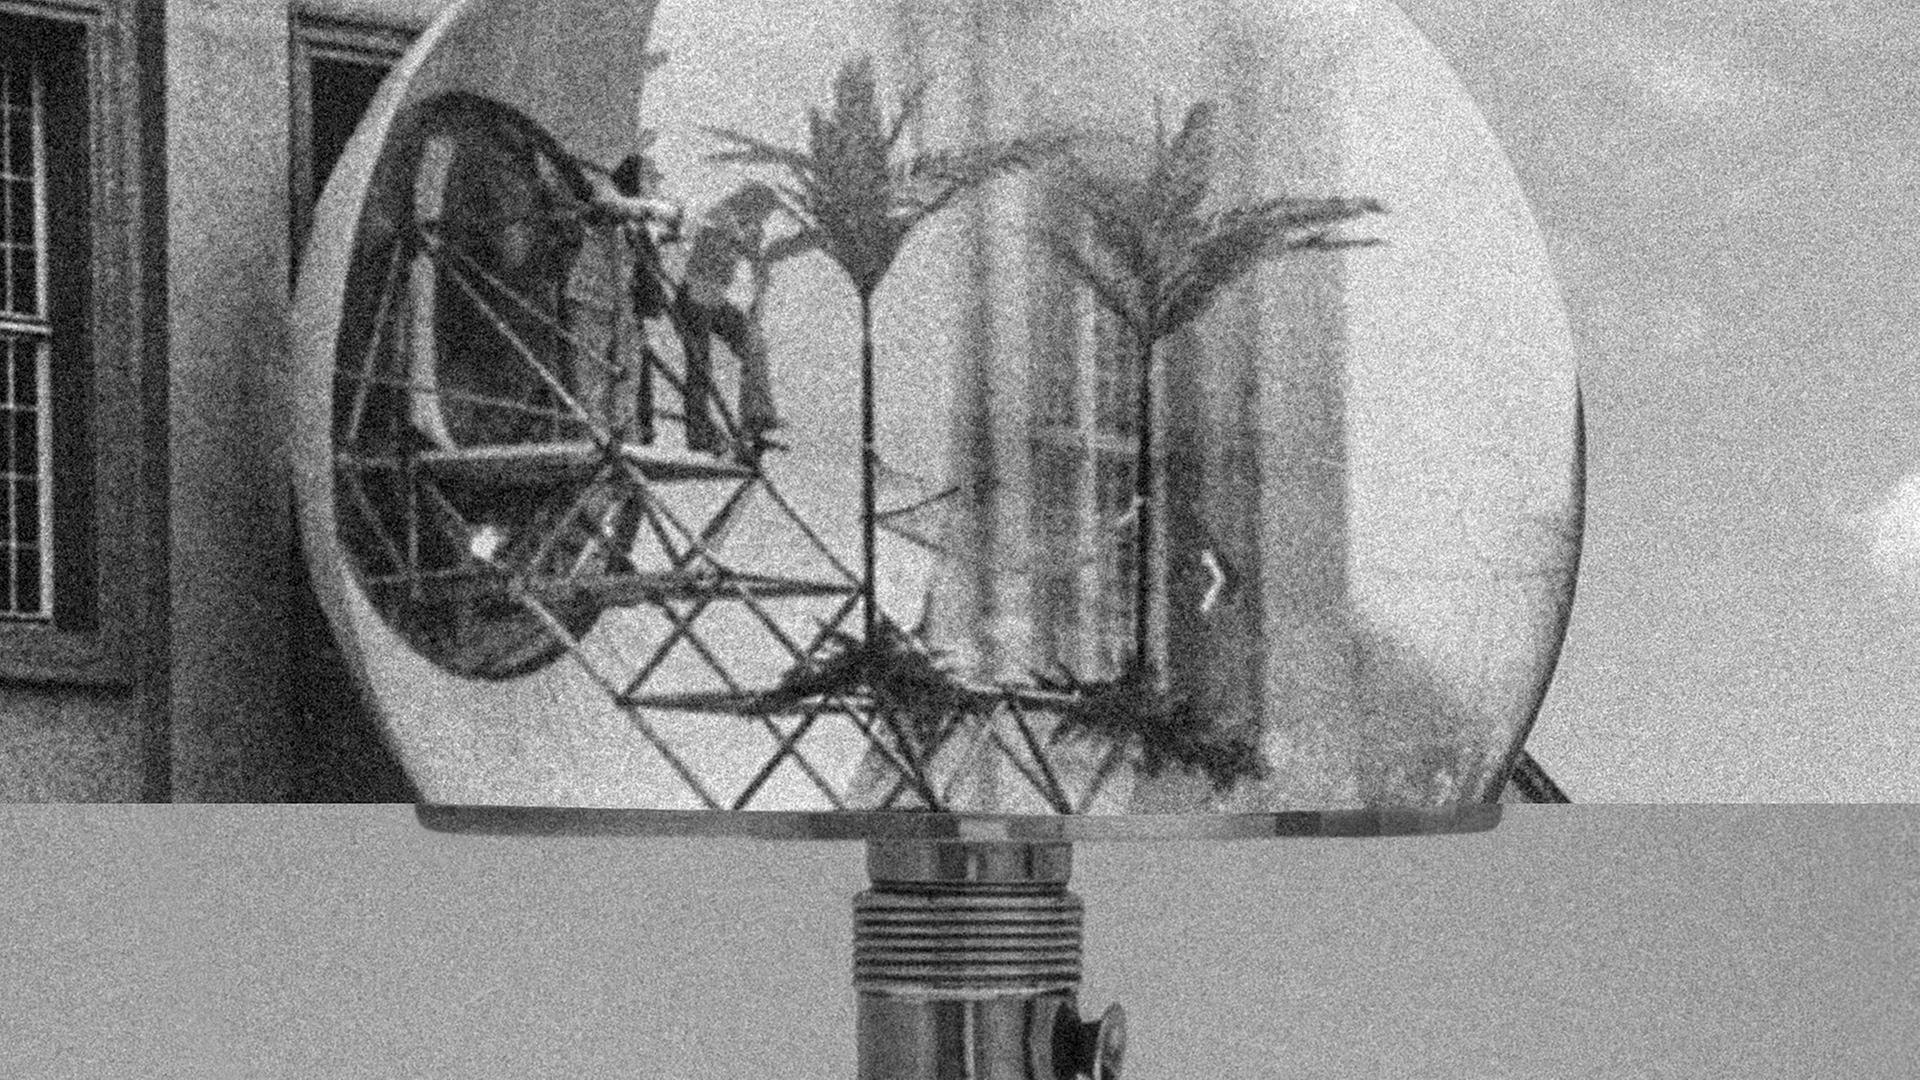 Das Bild zeigt eine Collage, auf der ein Bauhaus-Klassiker, die Wagenfeld-Lampe, zu sehen ist.